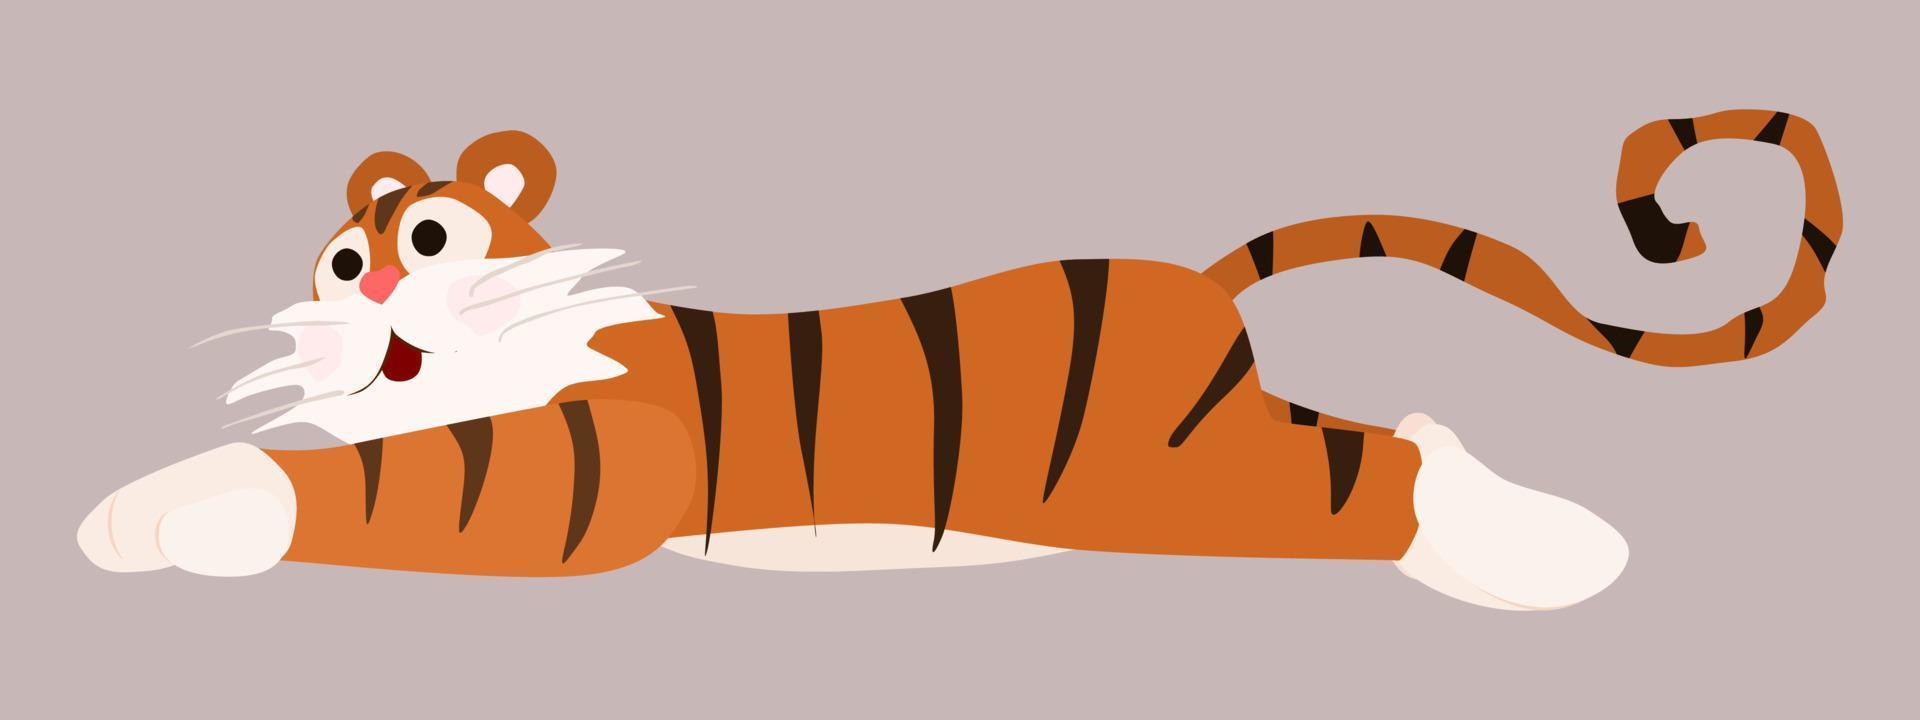 tigre perezoso yace en el suelo personaje brillante nuevo vector